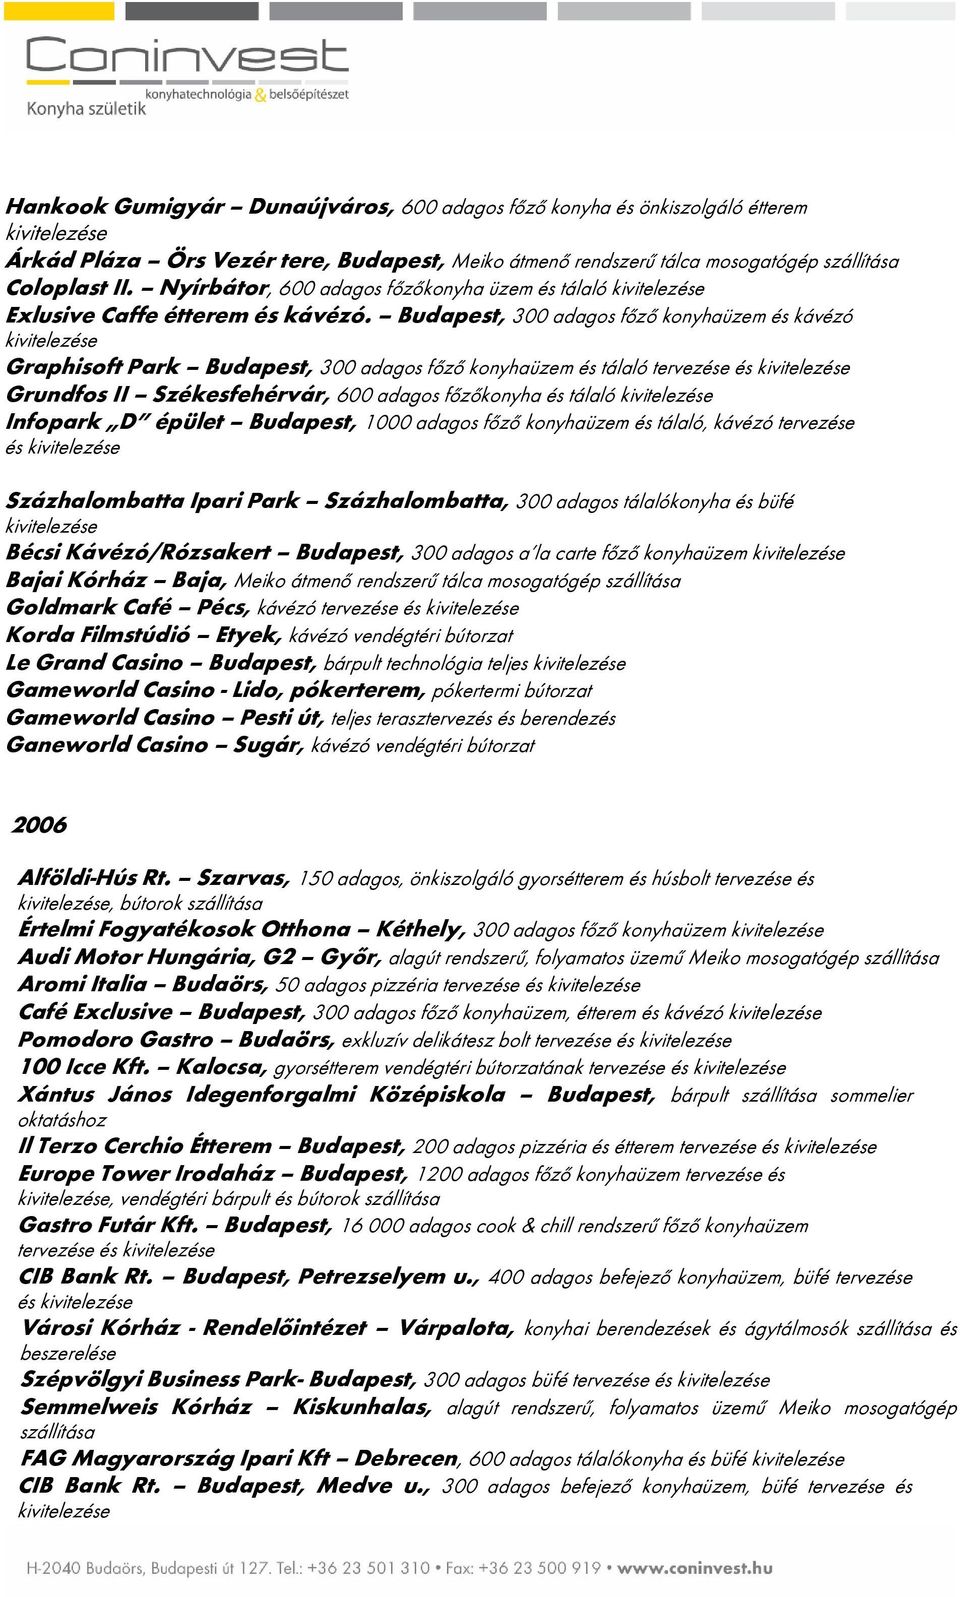 Budapest, 300 adagos főző és kávézó Graphisoft Park Budapest, 300 adagos főző és tálaló tervezése és Grundfos II Székesfehérvár, 600 adagos főzőkonyha és tálaló Infopark D épület Budapest, 1000